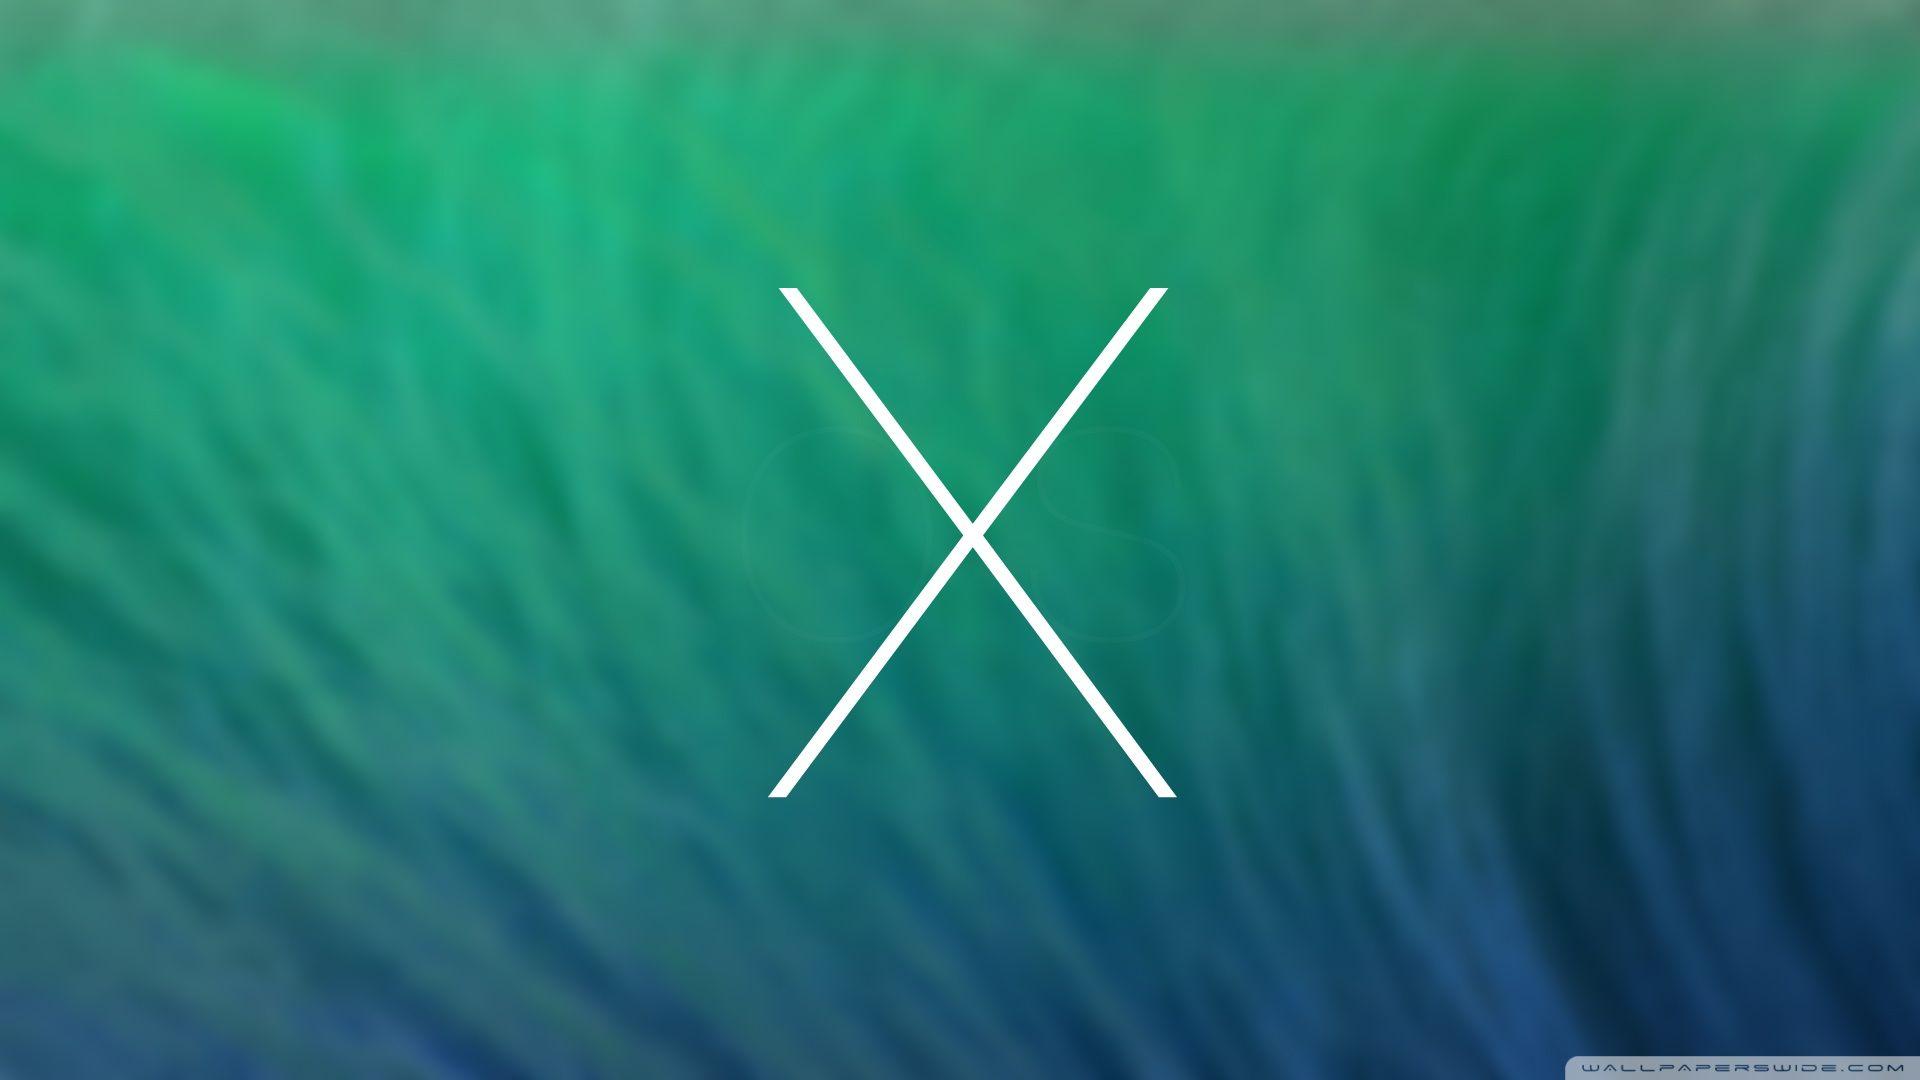 OS X Mavericks HD desktop wallpaper, High Definition, Fullscreen